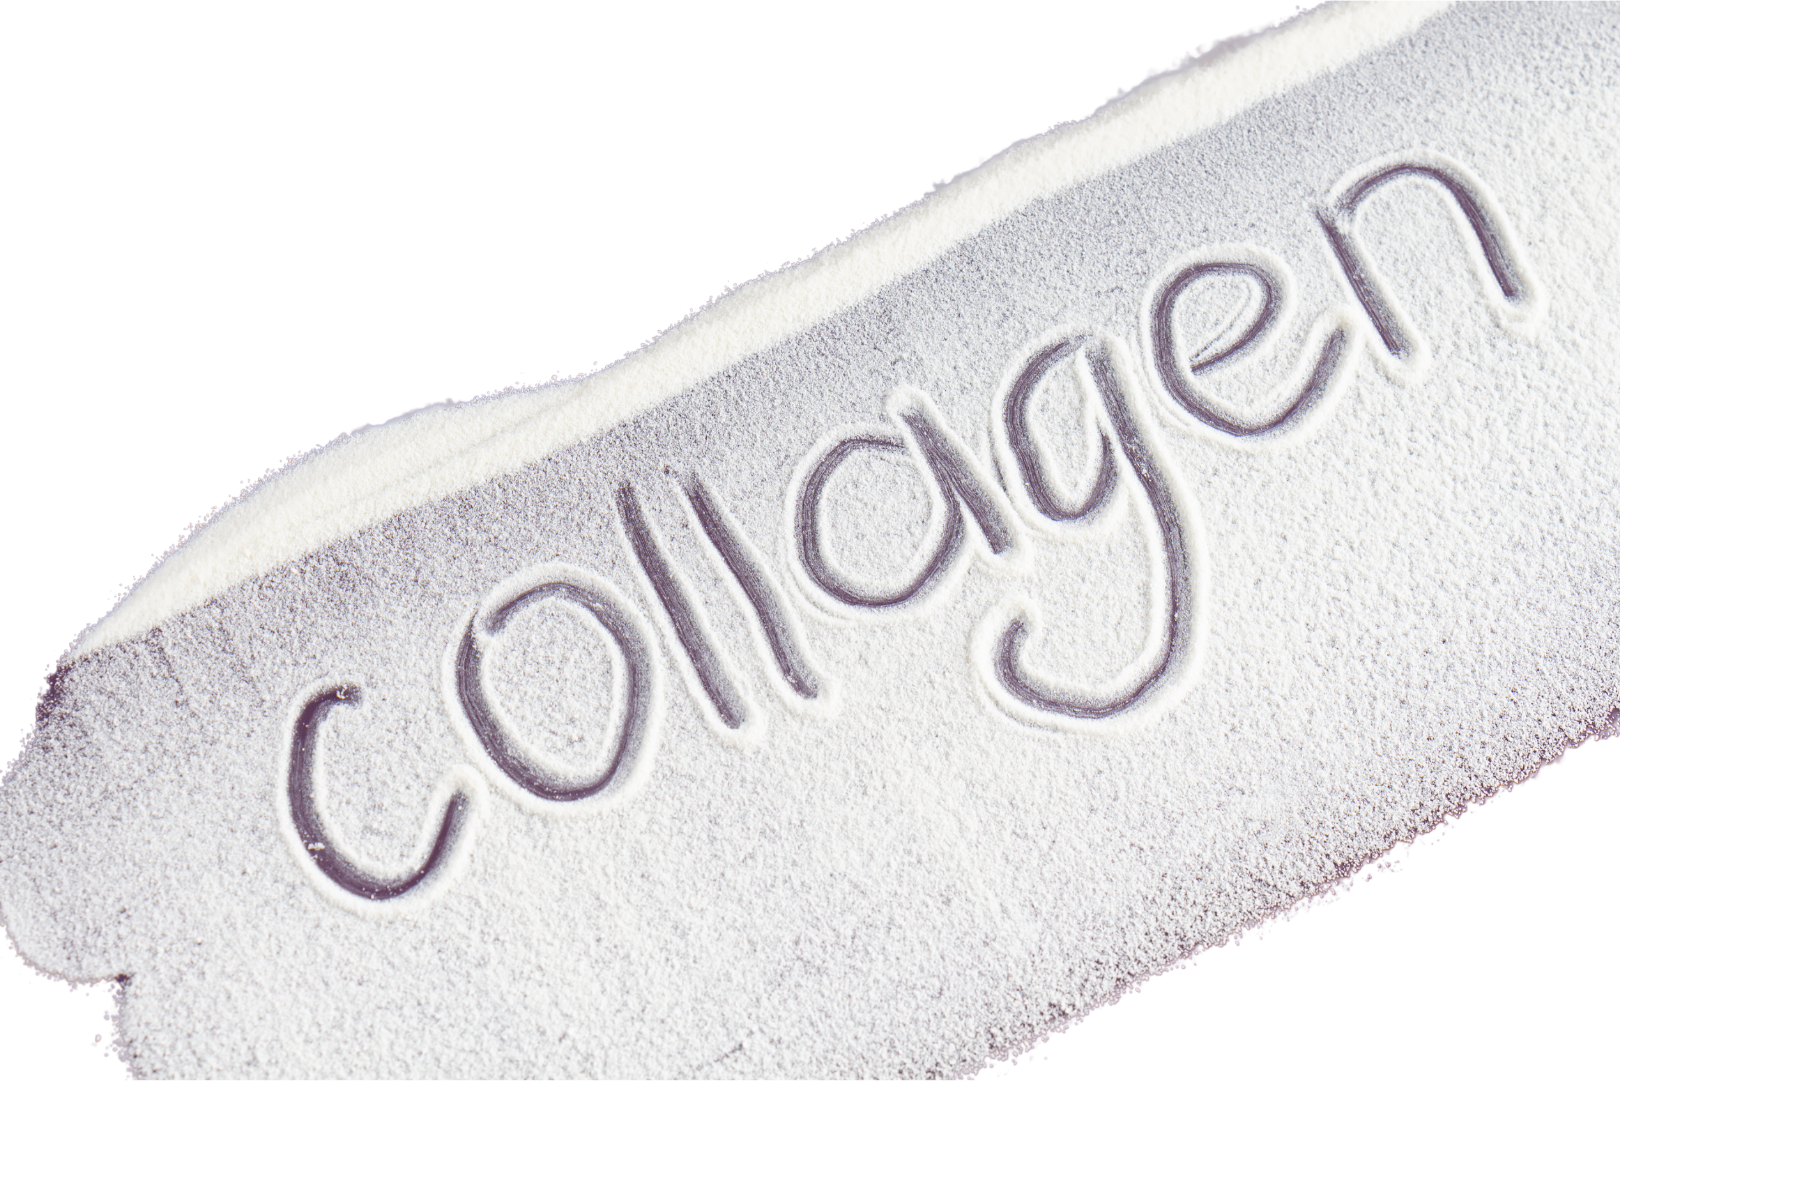 kolagen cellulit estrogen lchf dieta